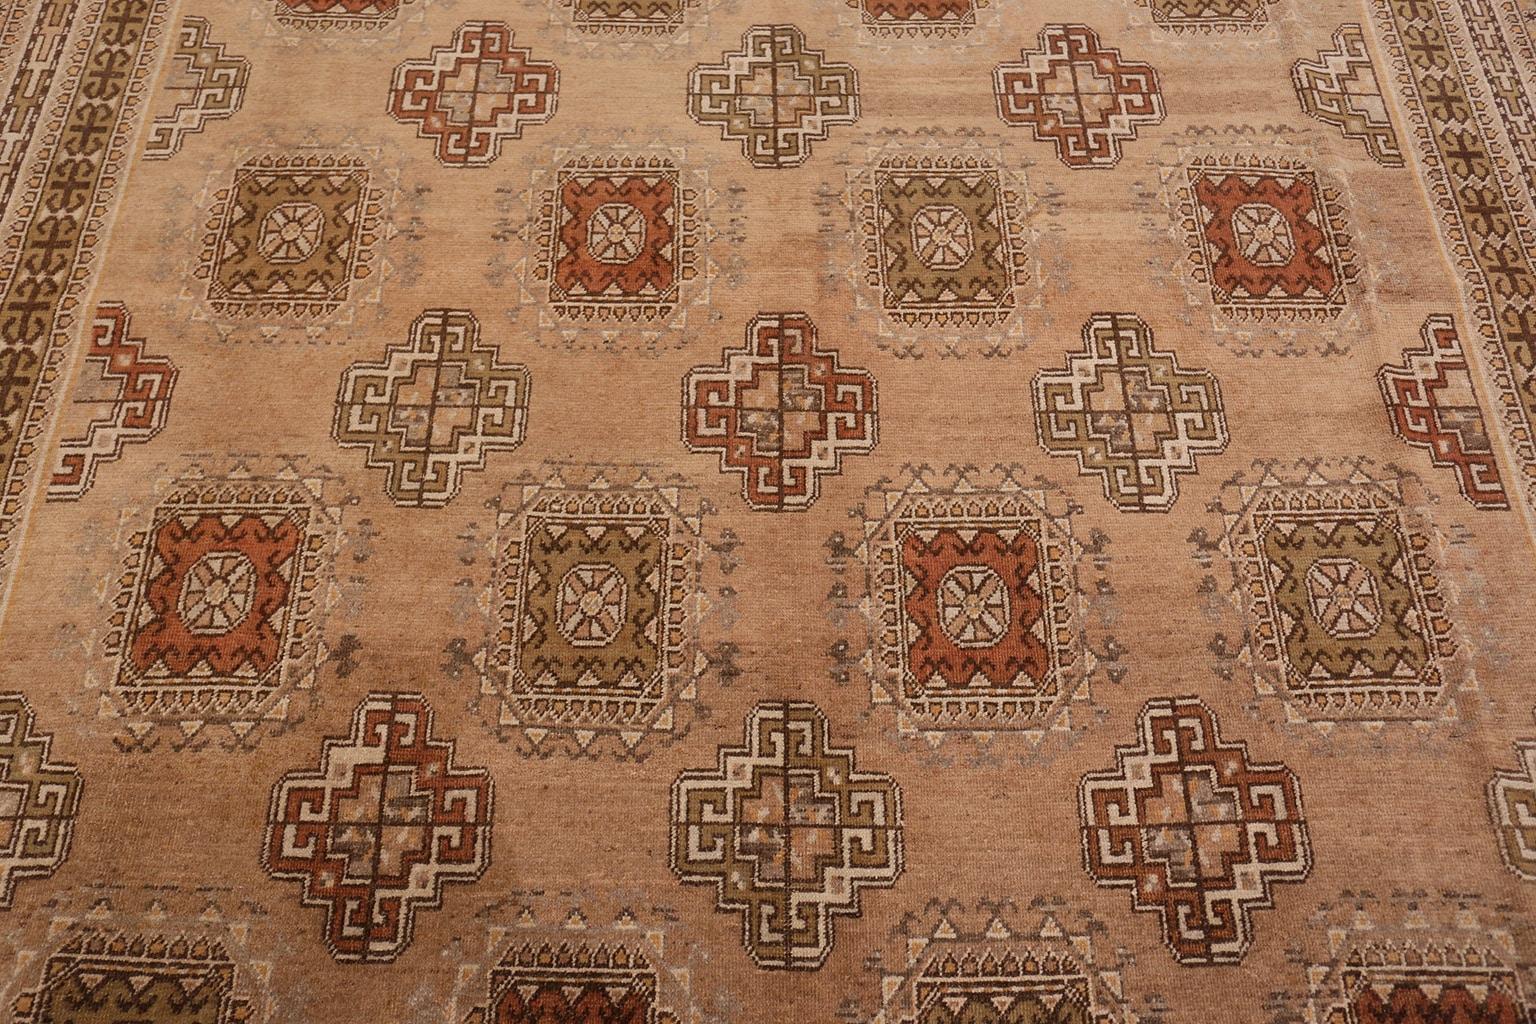 Magnifique grand tapis ancien Khotan de taille galerie à design Tibal, Pays d'origine : Turkestan oriental, Circa Date : Début du 20ème siècle (environ 1900) - Ce spectaculaire tapis ancien de Turkoman présente un motif classique de grands et petits